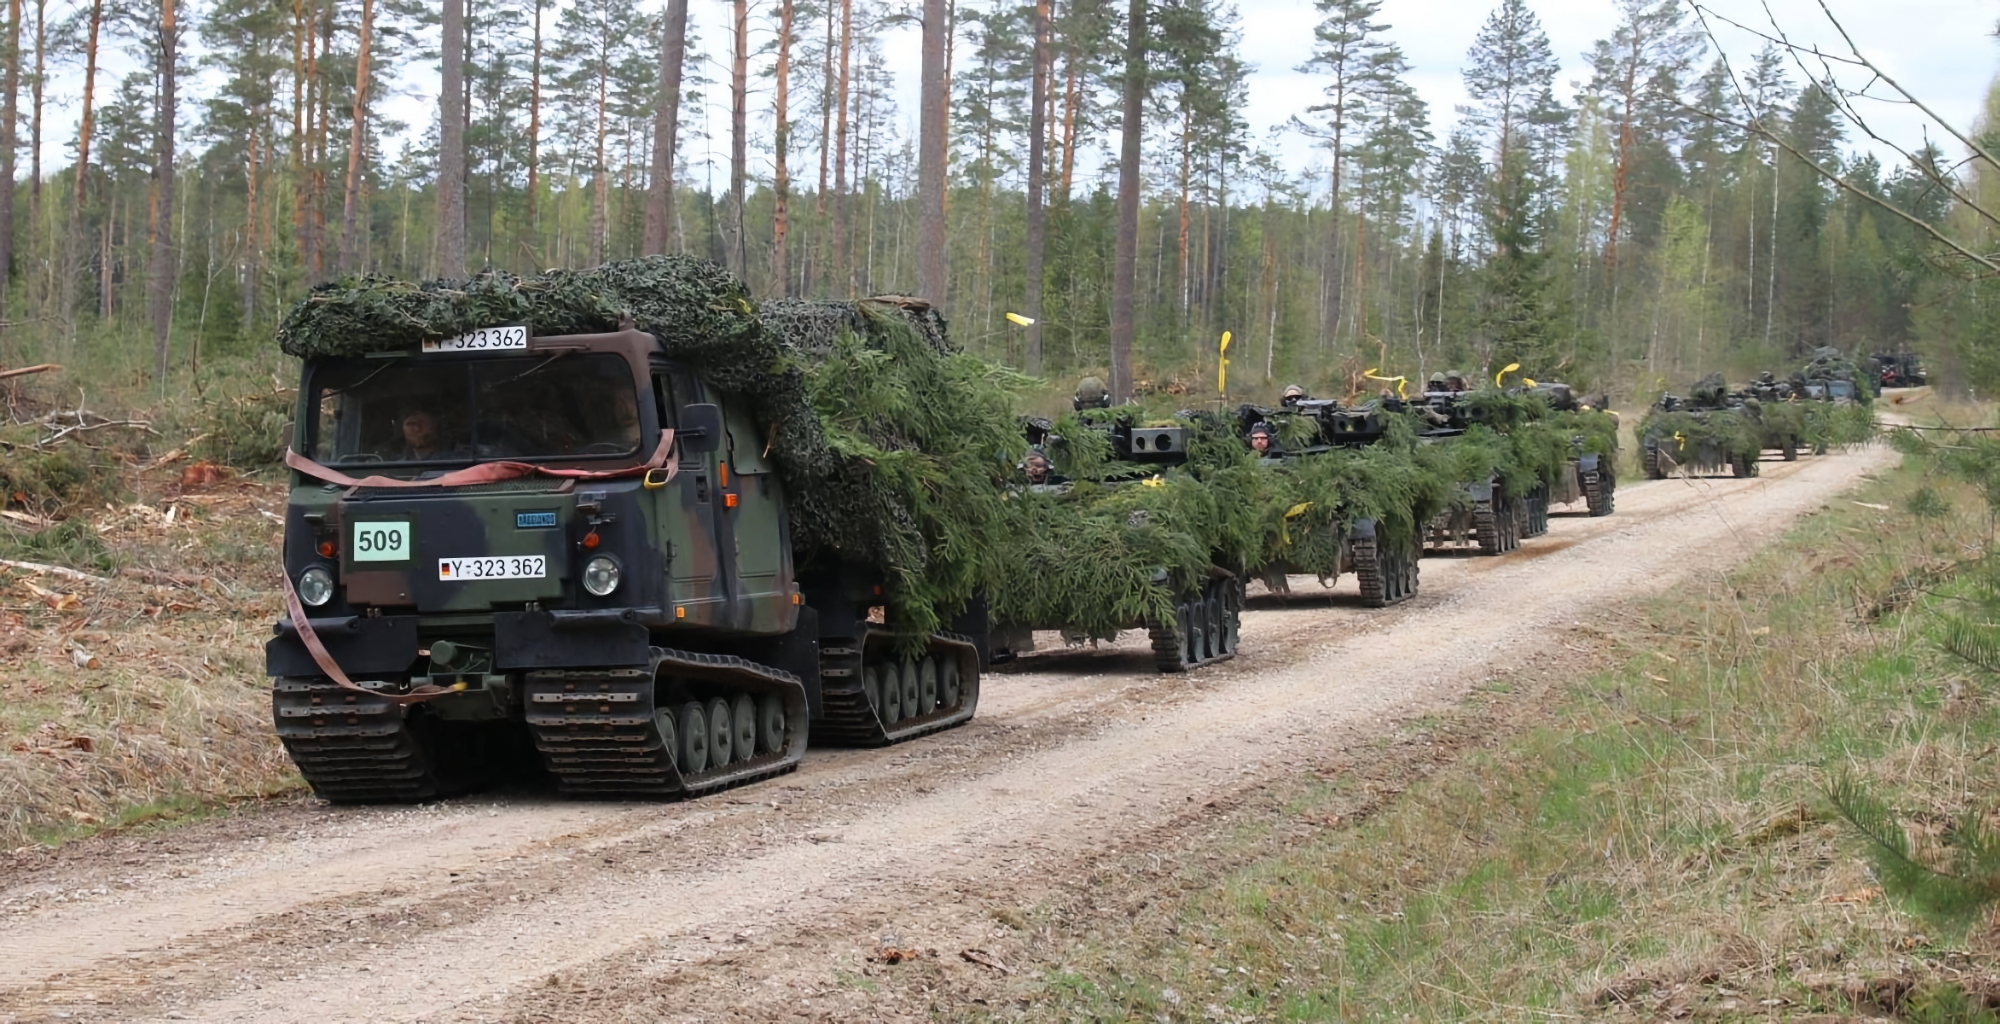 Niemcy wysyłają nowy pakiet pomocy wojskowej dla Ukrainy, który obejmuje pojazdy terenowe Bandvagn 206 i inną broń.